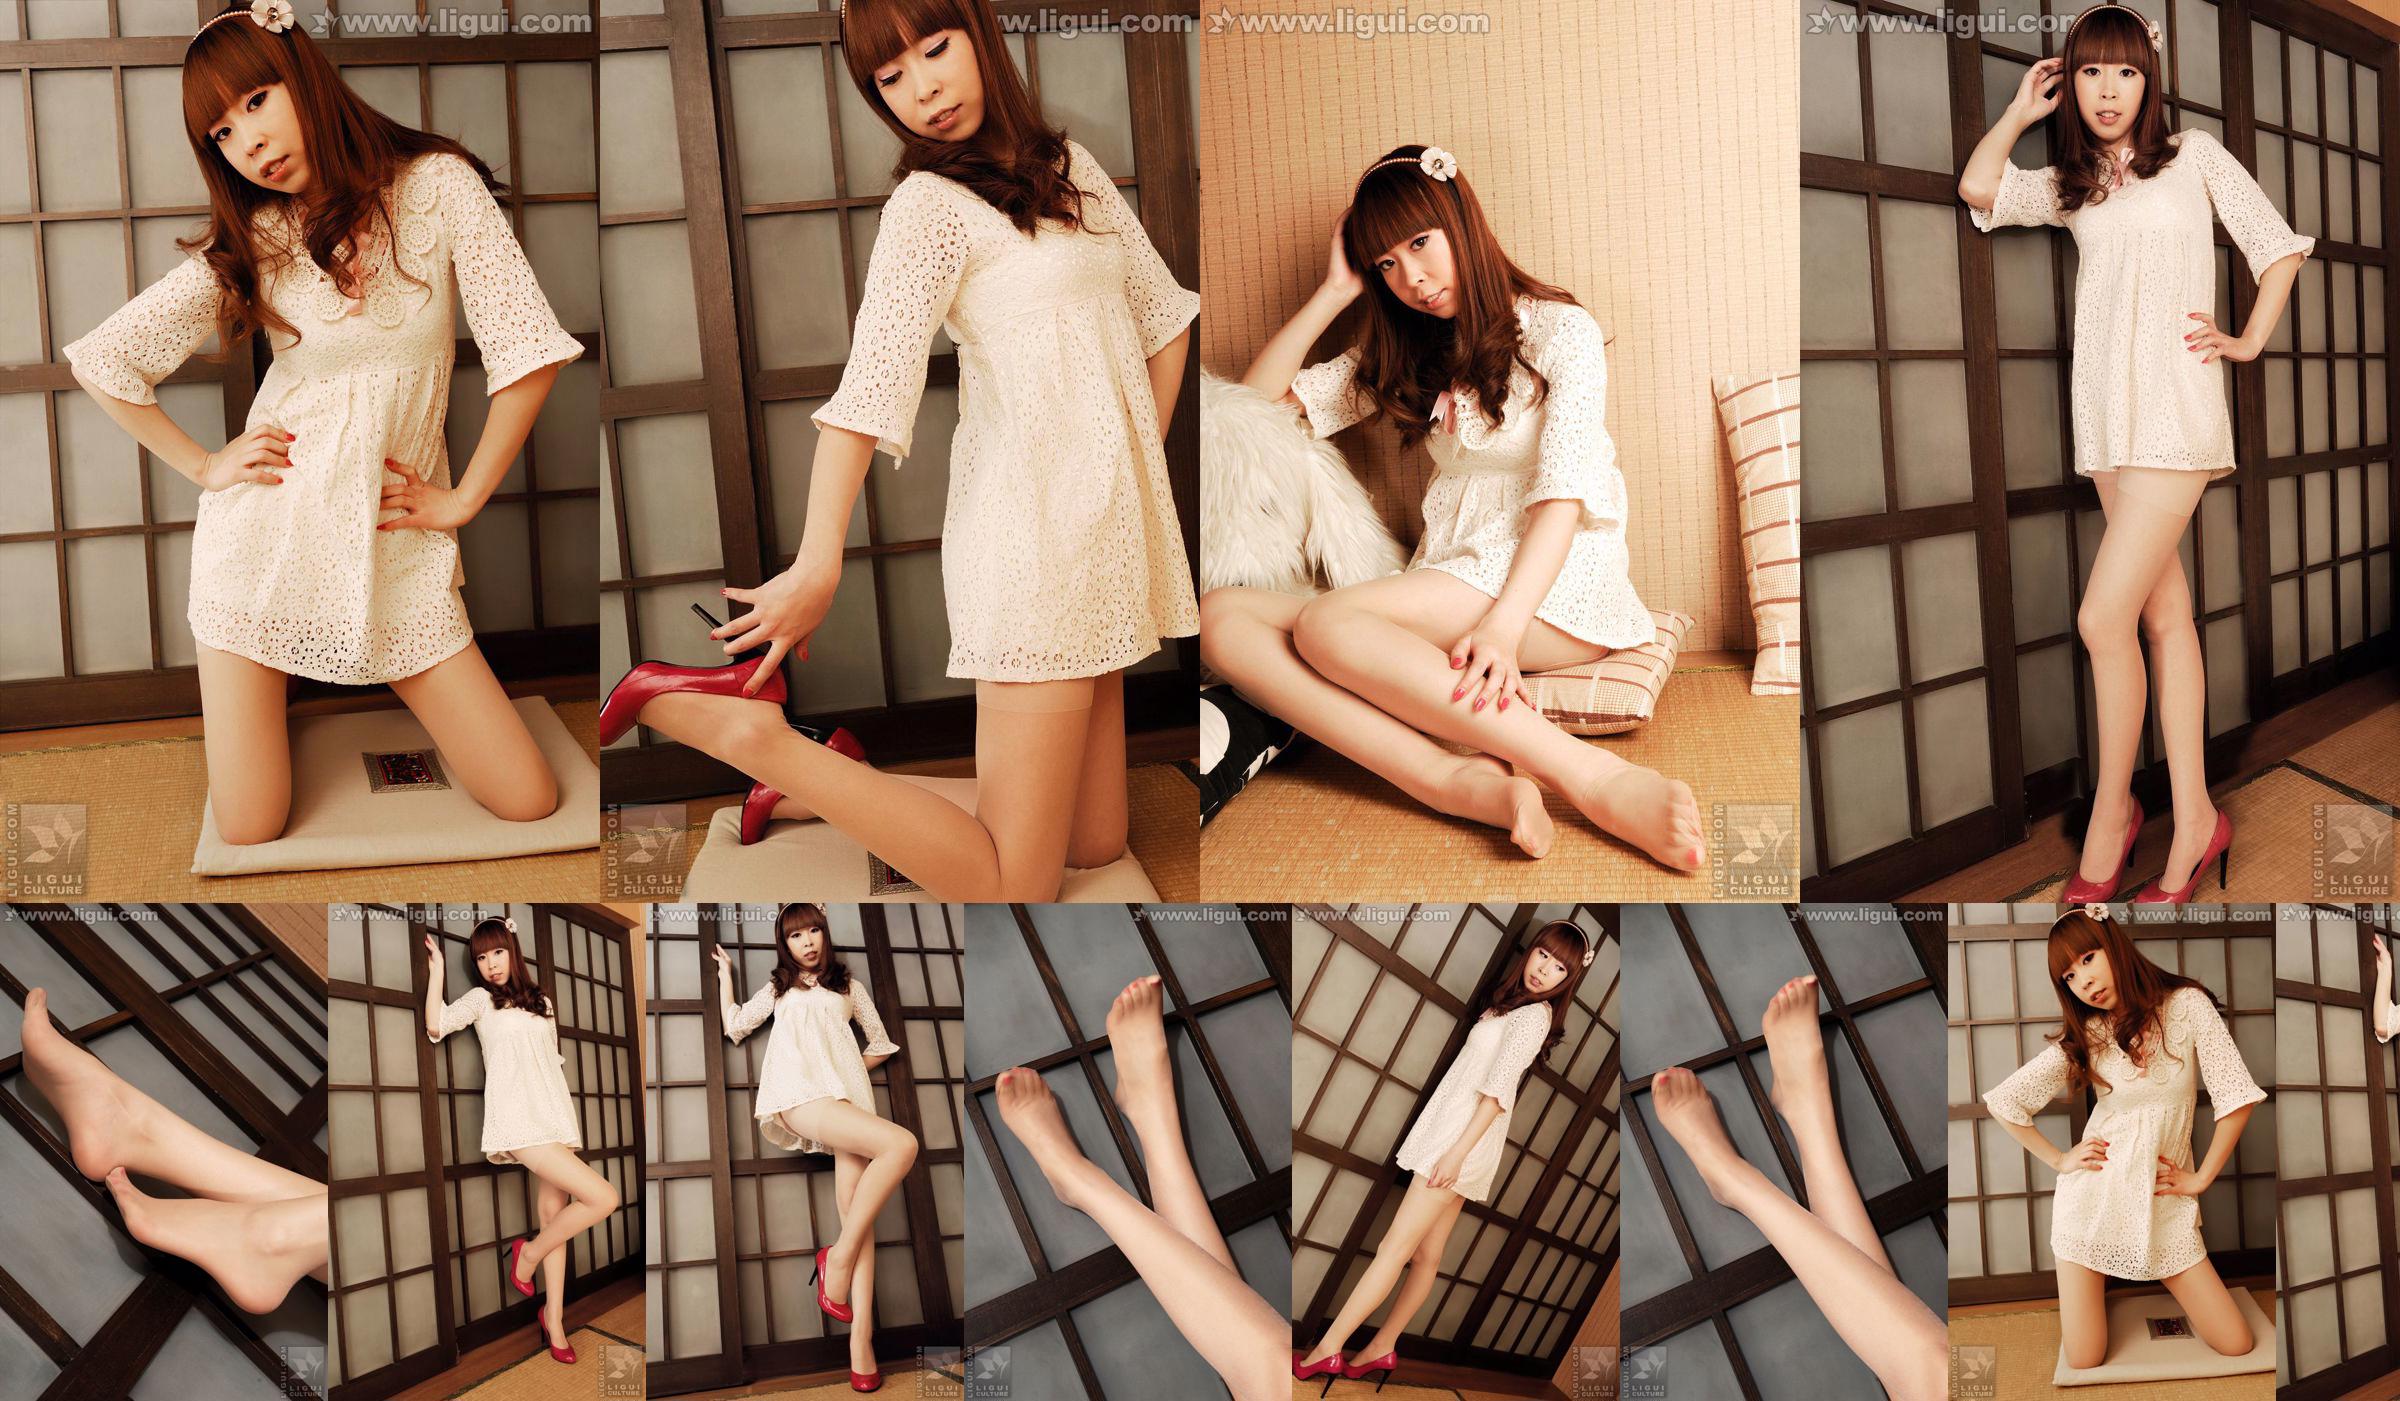 Modell Vikcy "Die Versuchung des japanischen Stils" [丽 柜 LiGui] Schöne Beine und Jadefuß Foto Bild No.756c28 Seite 9